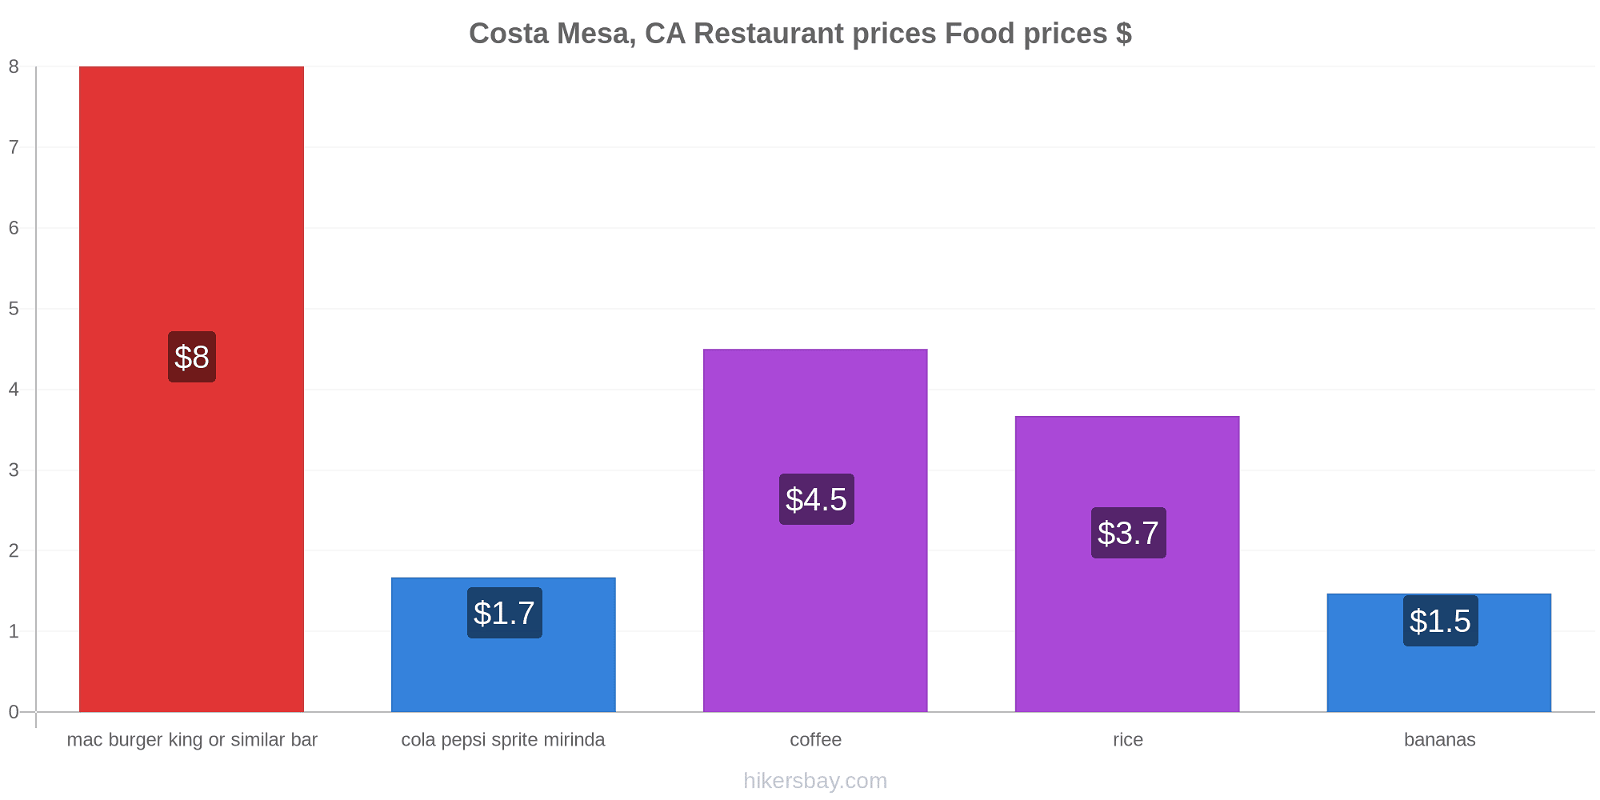 Costa Mesa, CA price changes hikersbay.com